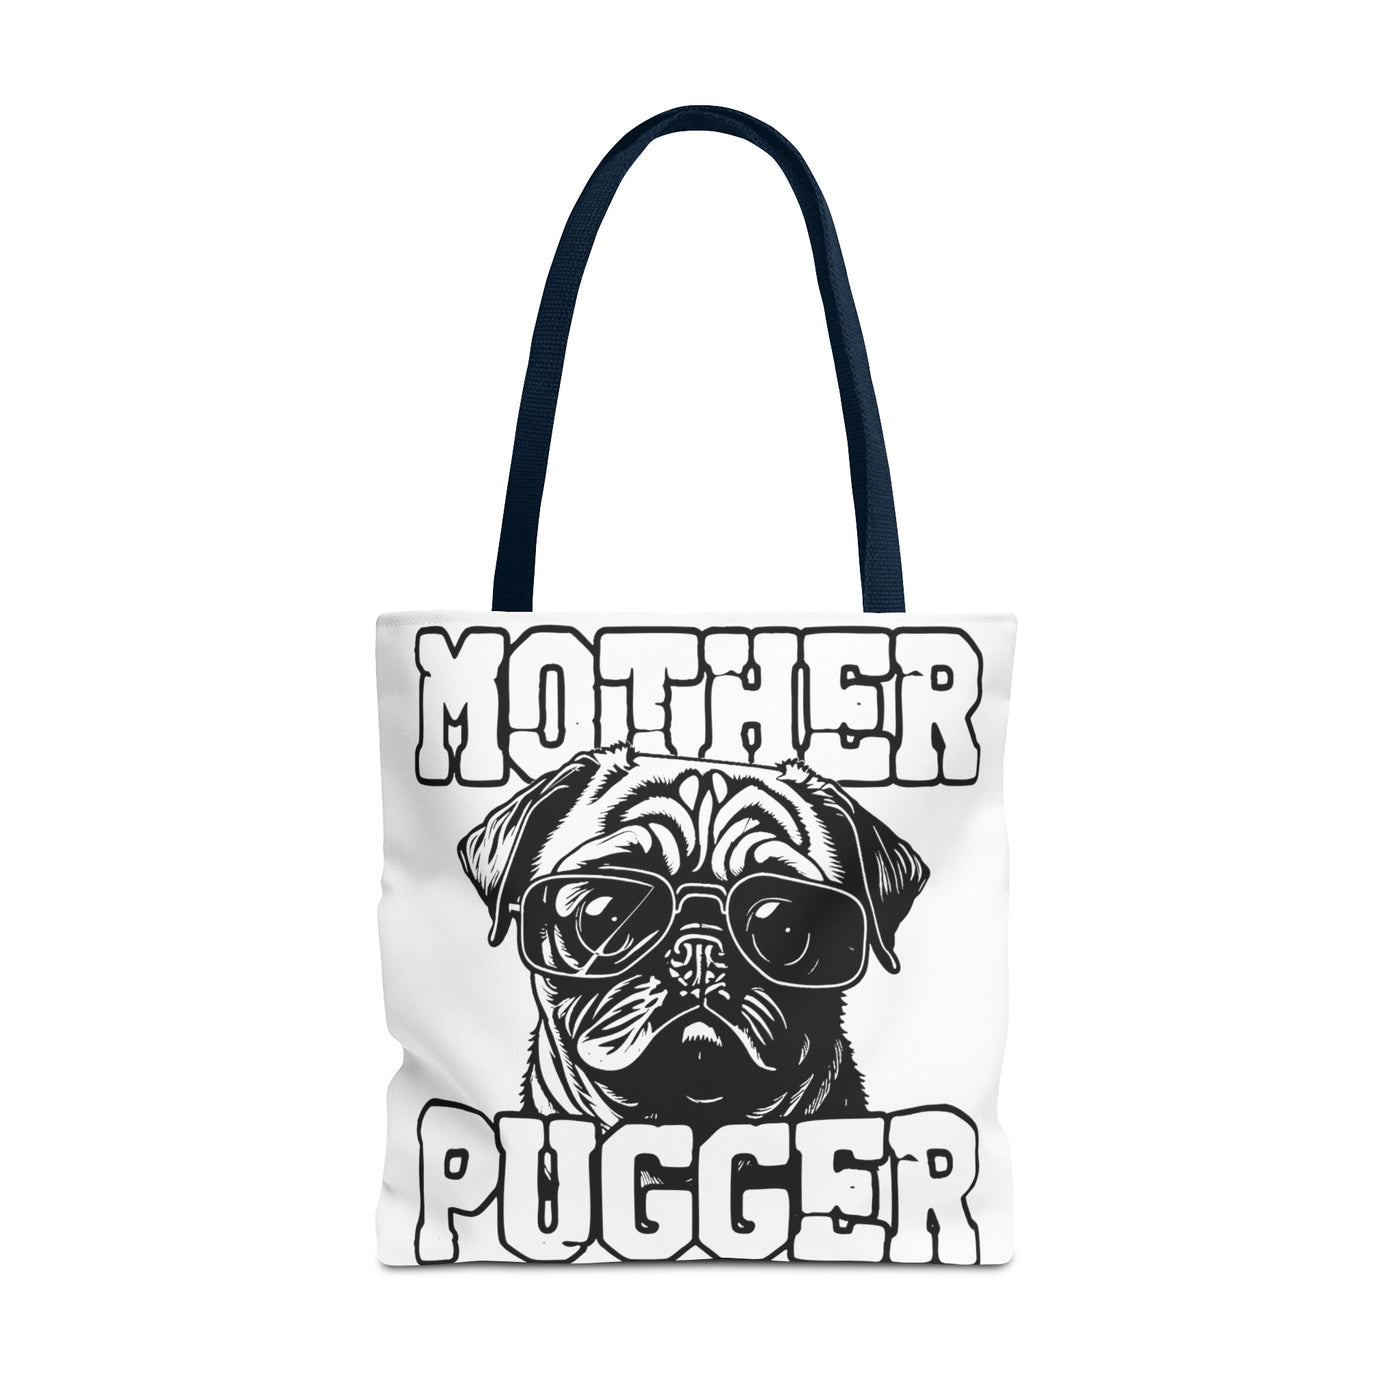 Mother Pugger Tote Bag